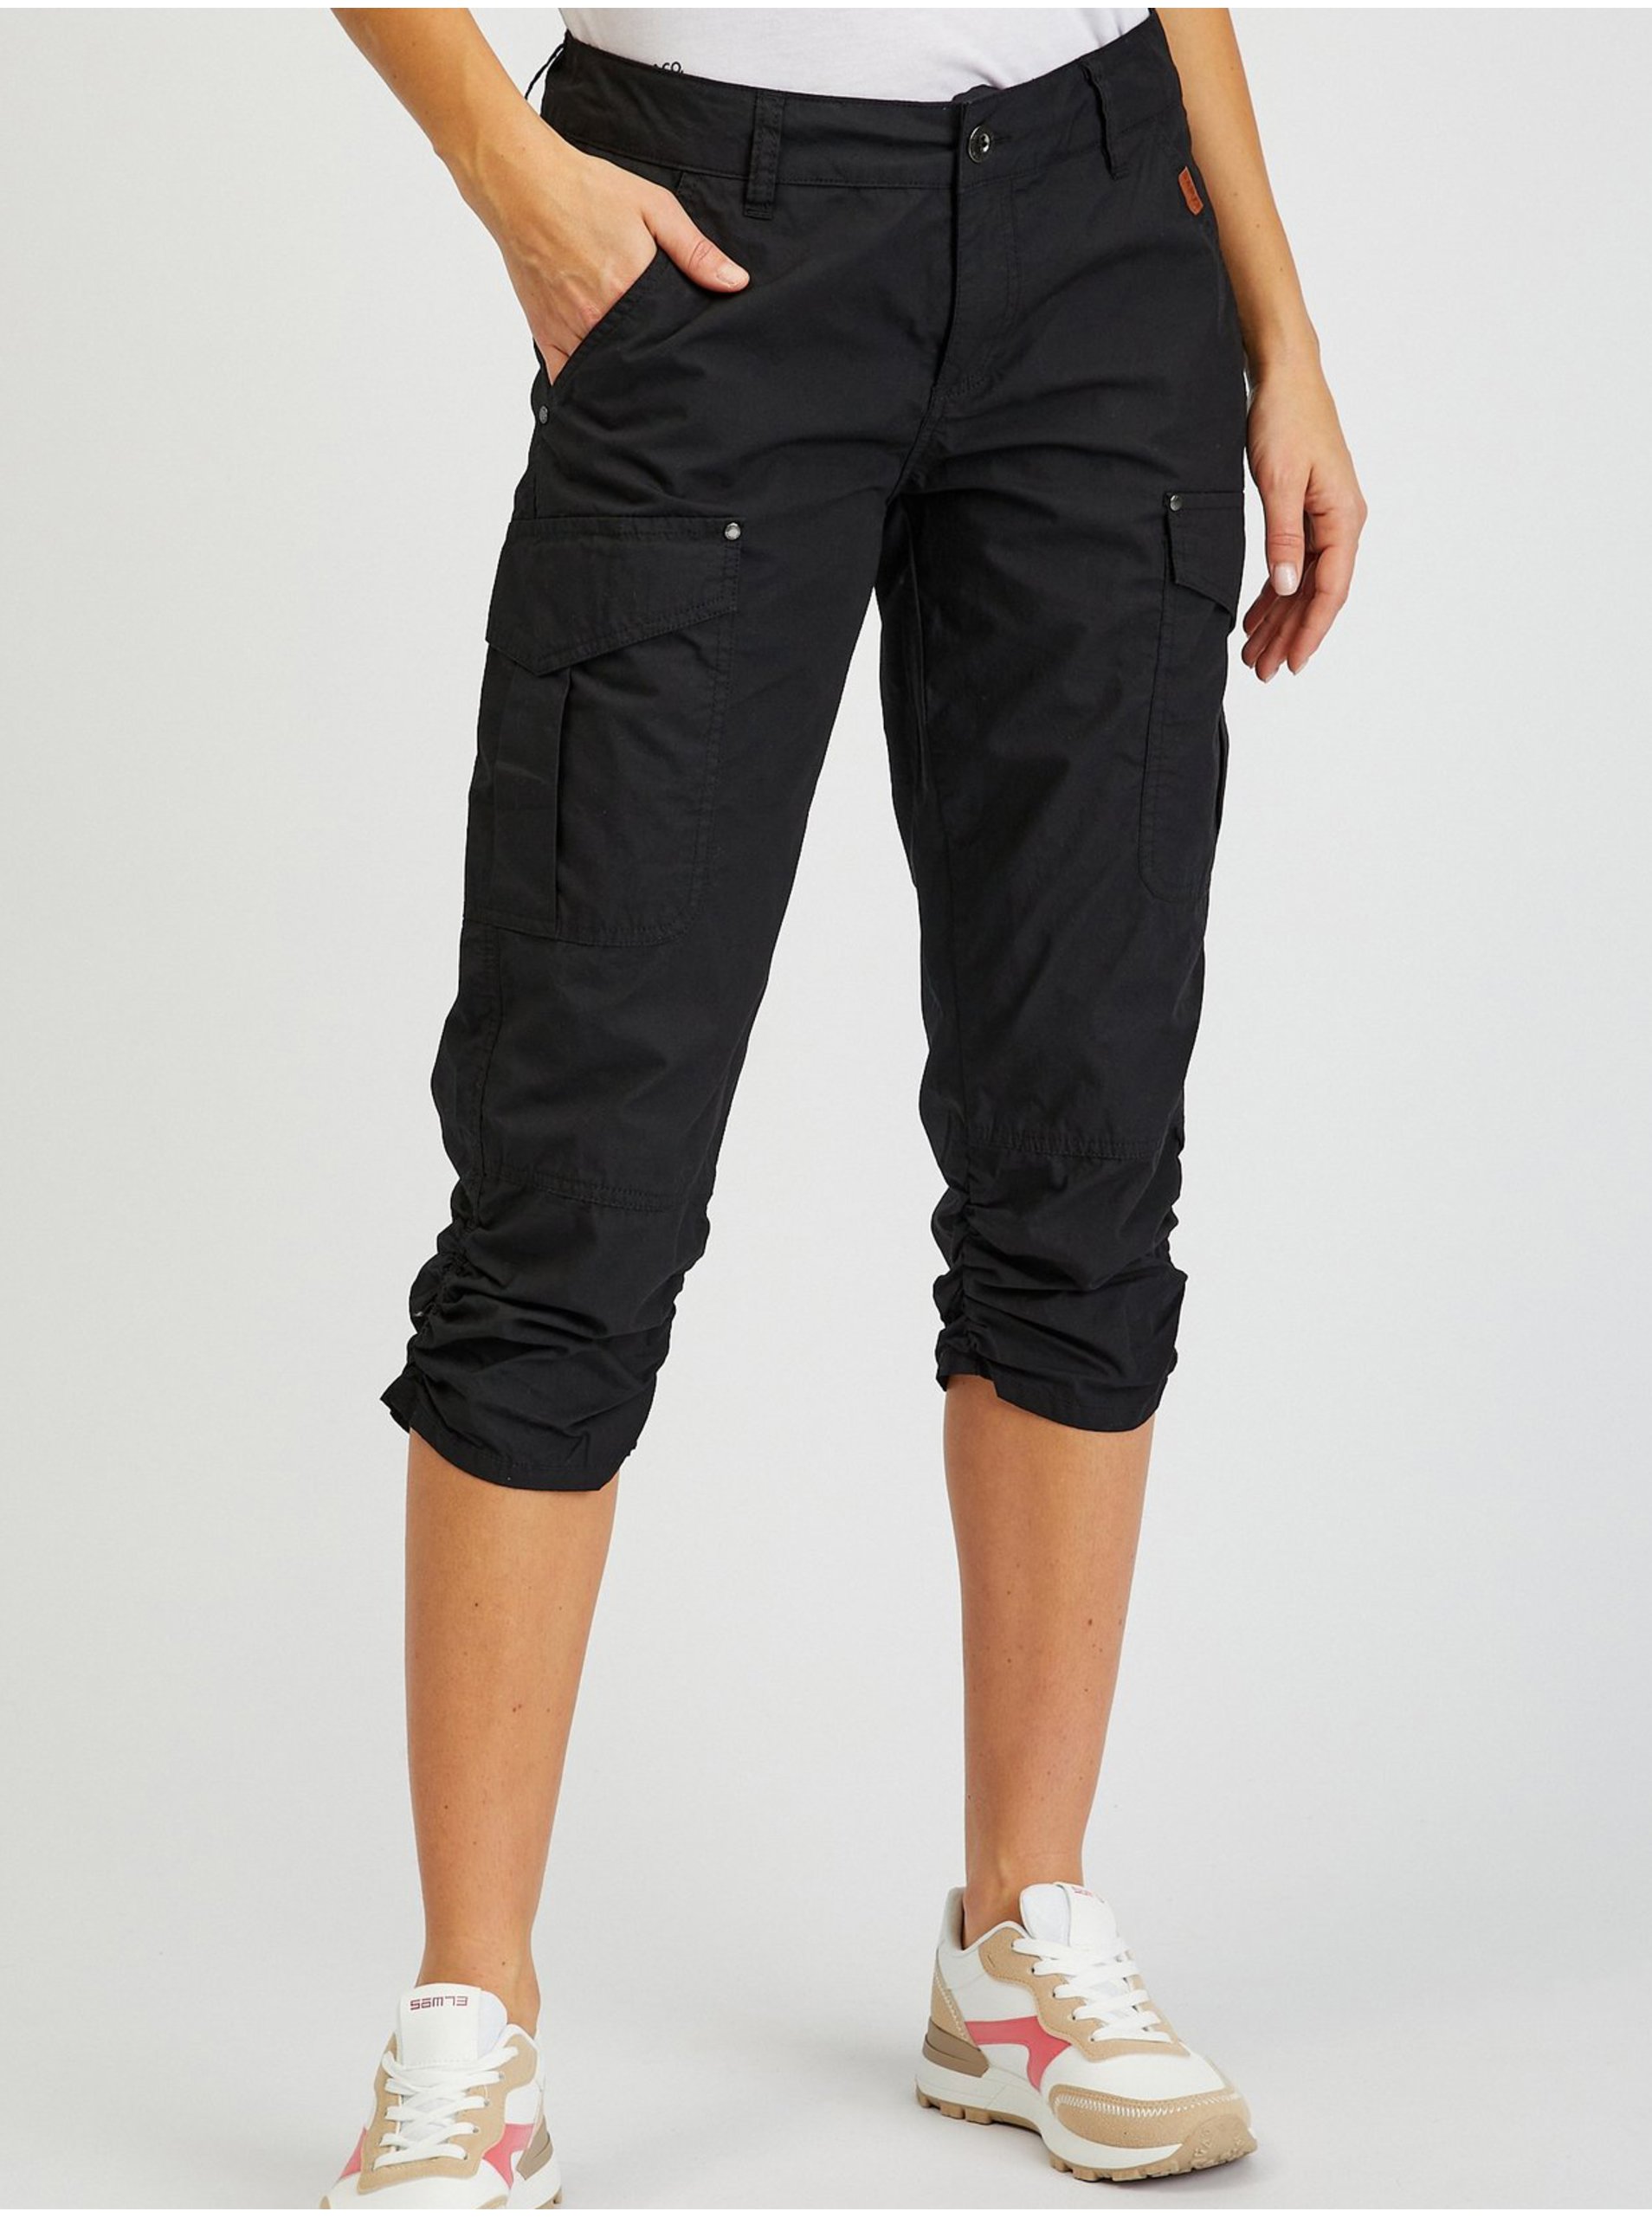 E-shop Černé dámské tříčtvrteční kalhoty SAM73 Fornax